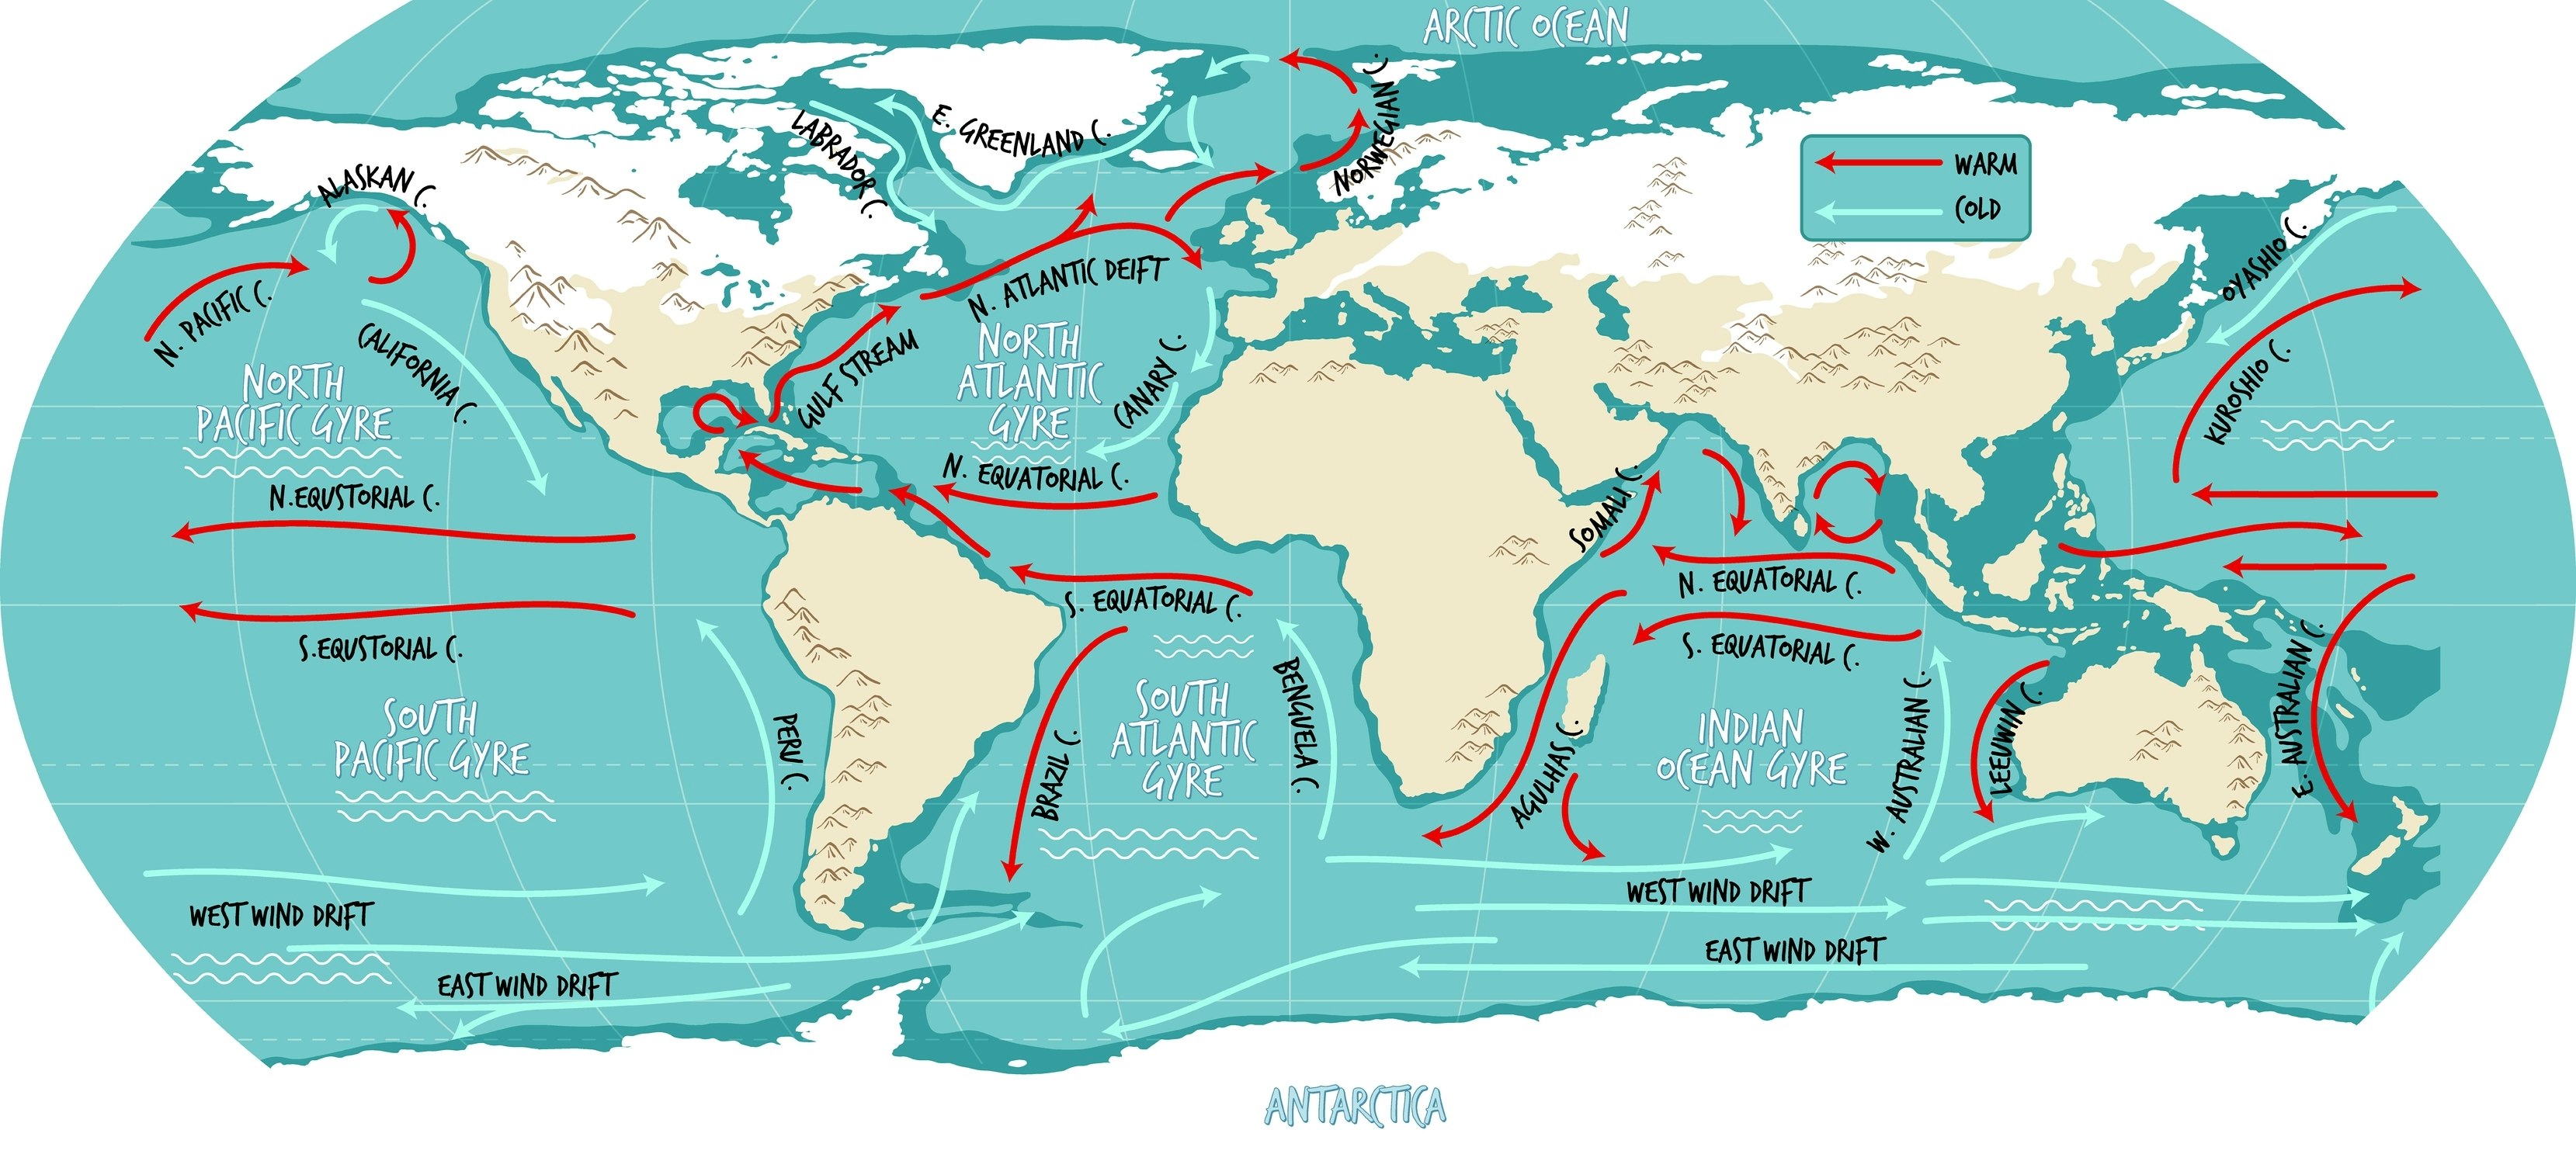 Ilustračná mapa sveta oceánskych prúdov s názvami.